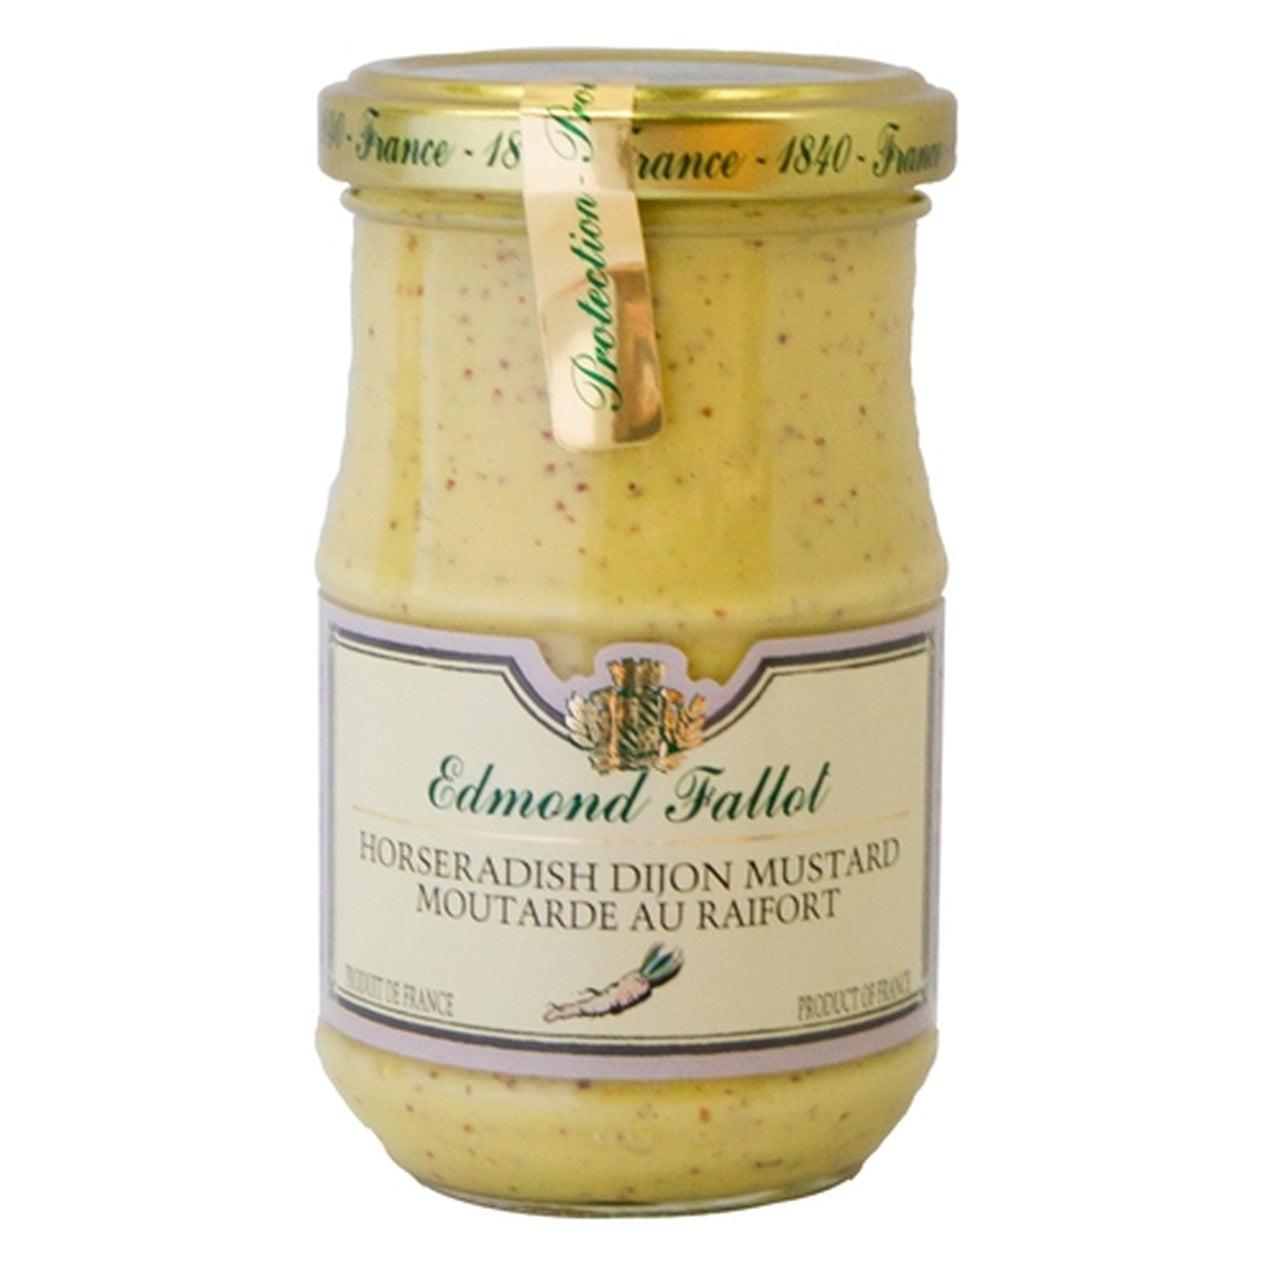 Edmond Fallot, Horseradish Dijon Mustard, 7.4 oz